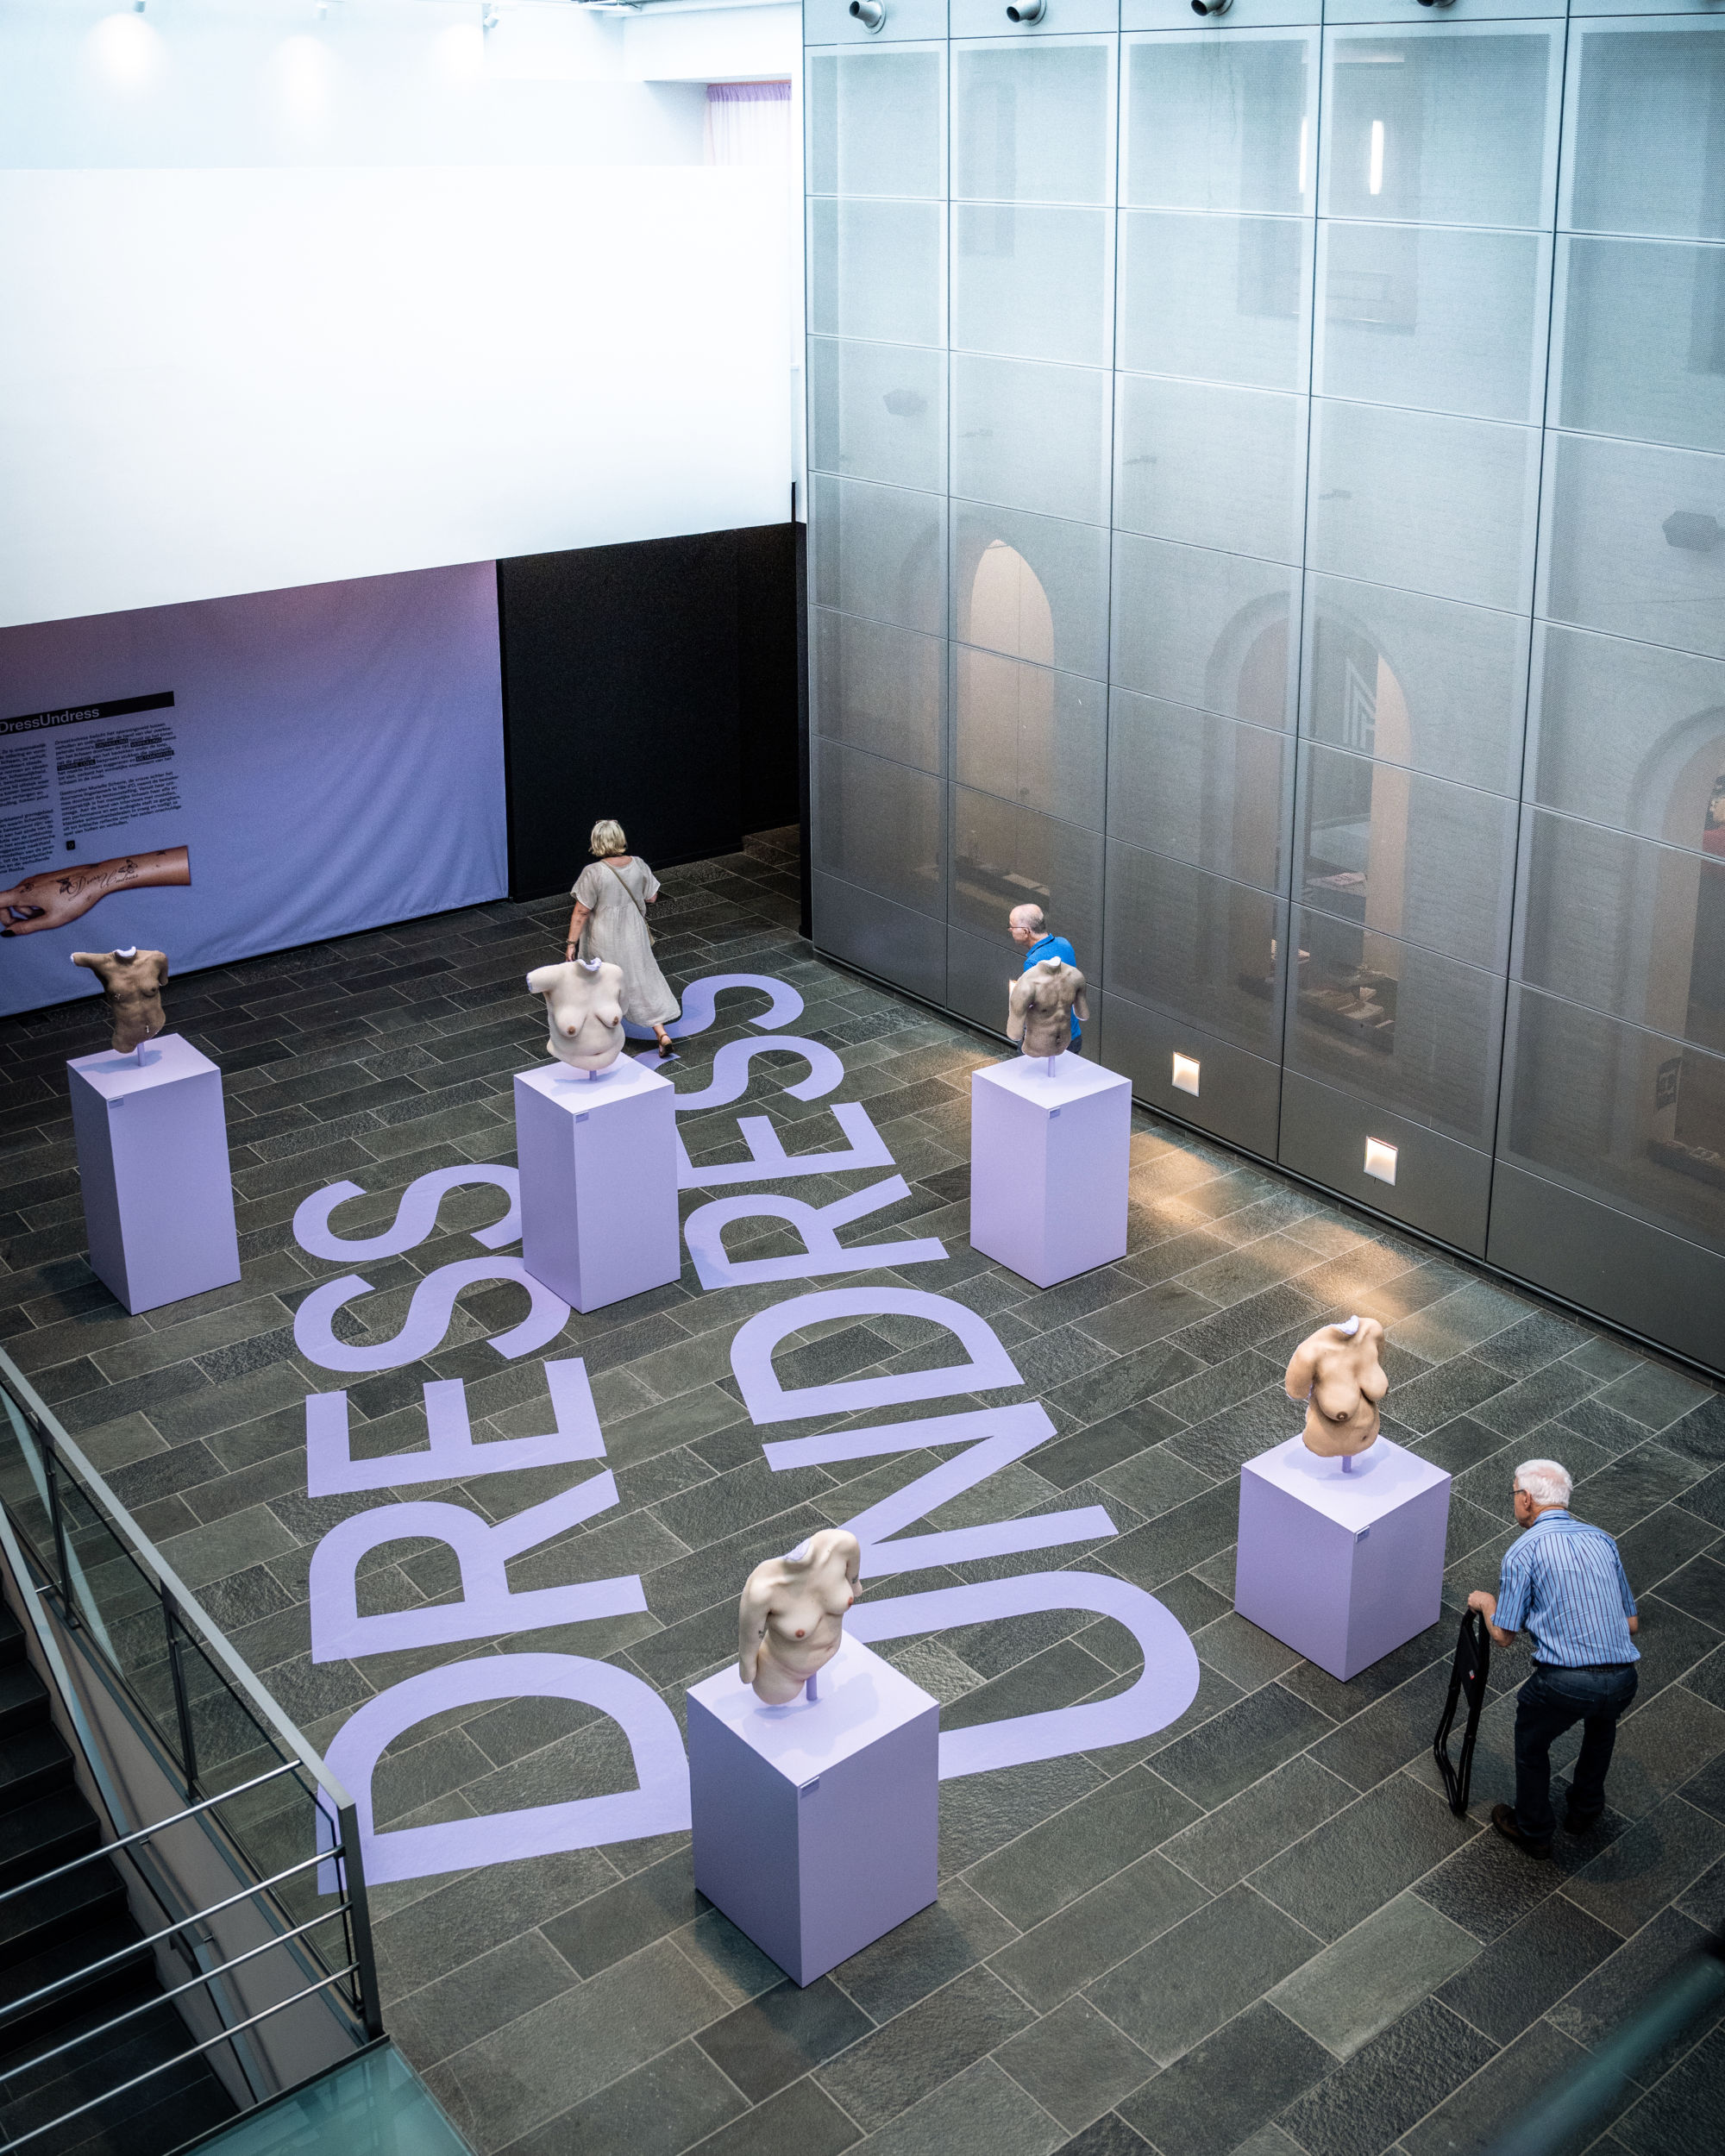 Nacktheit in der Mode ist Thema der aktuellen Sonderausstellung DressUndress, die bis zum 20.11.2022 im Modemuseum Hasselt ausgestellt wird